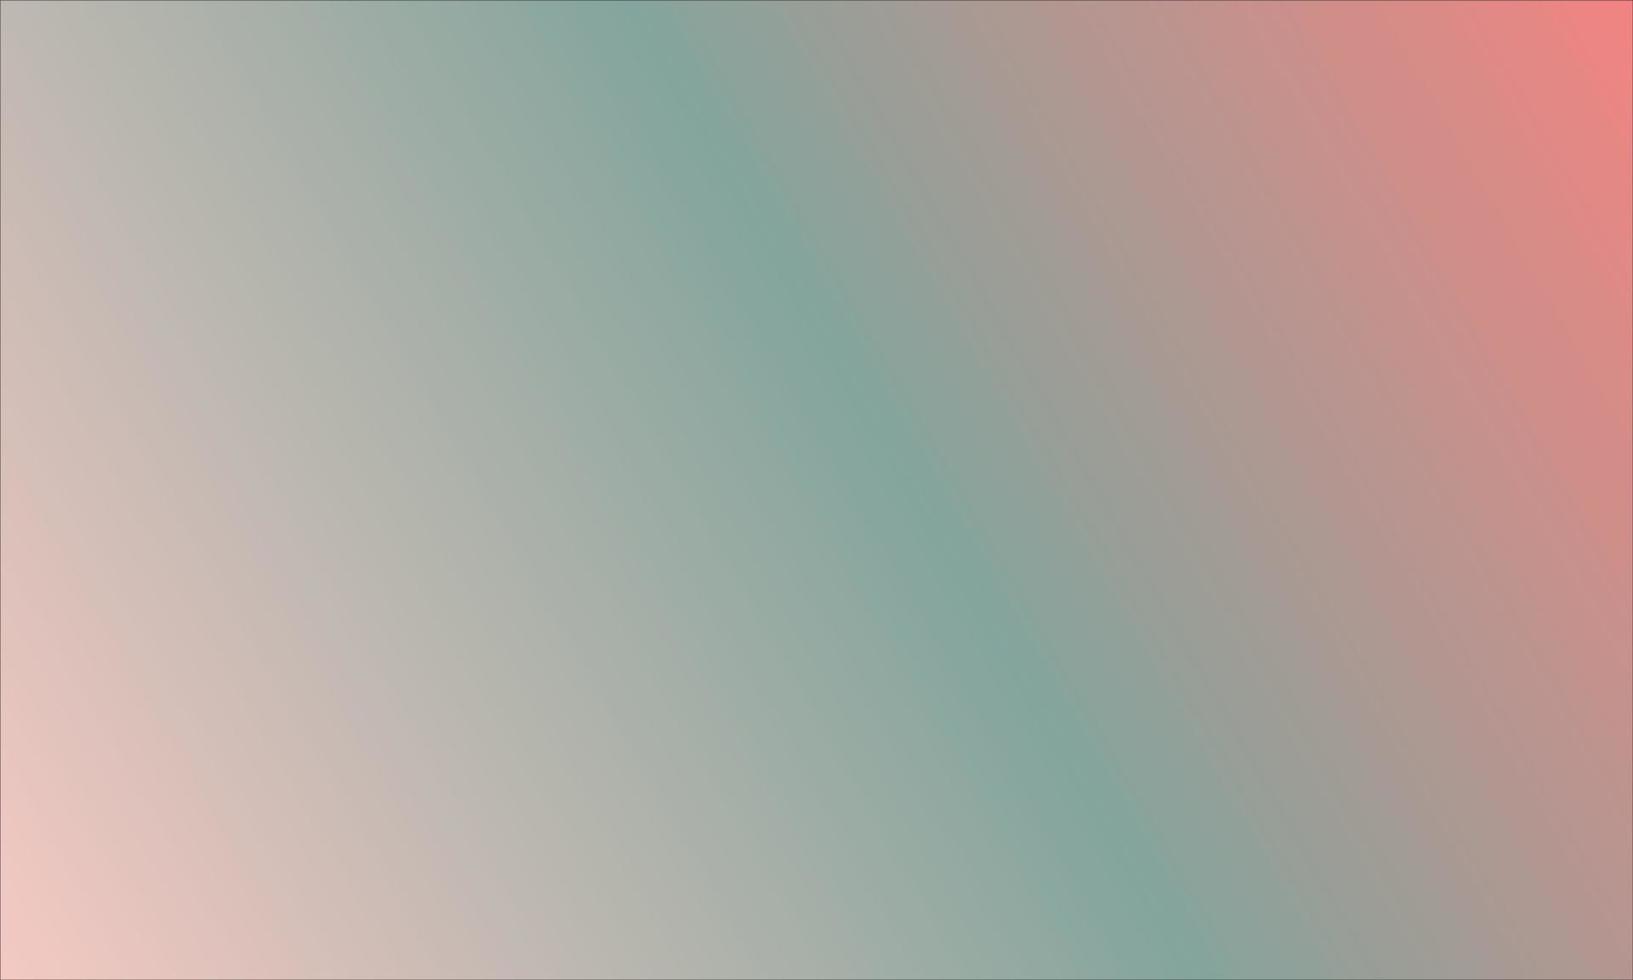 abstrakt suddig lutning maska bakgrund i ljus regnbåge färger. färgrik baner mall. vektor